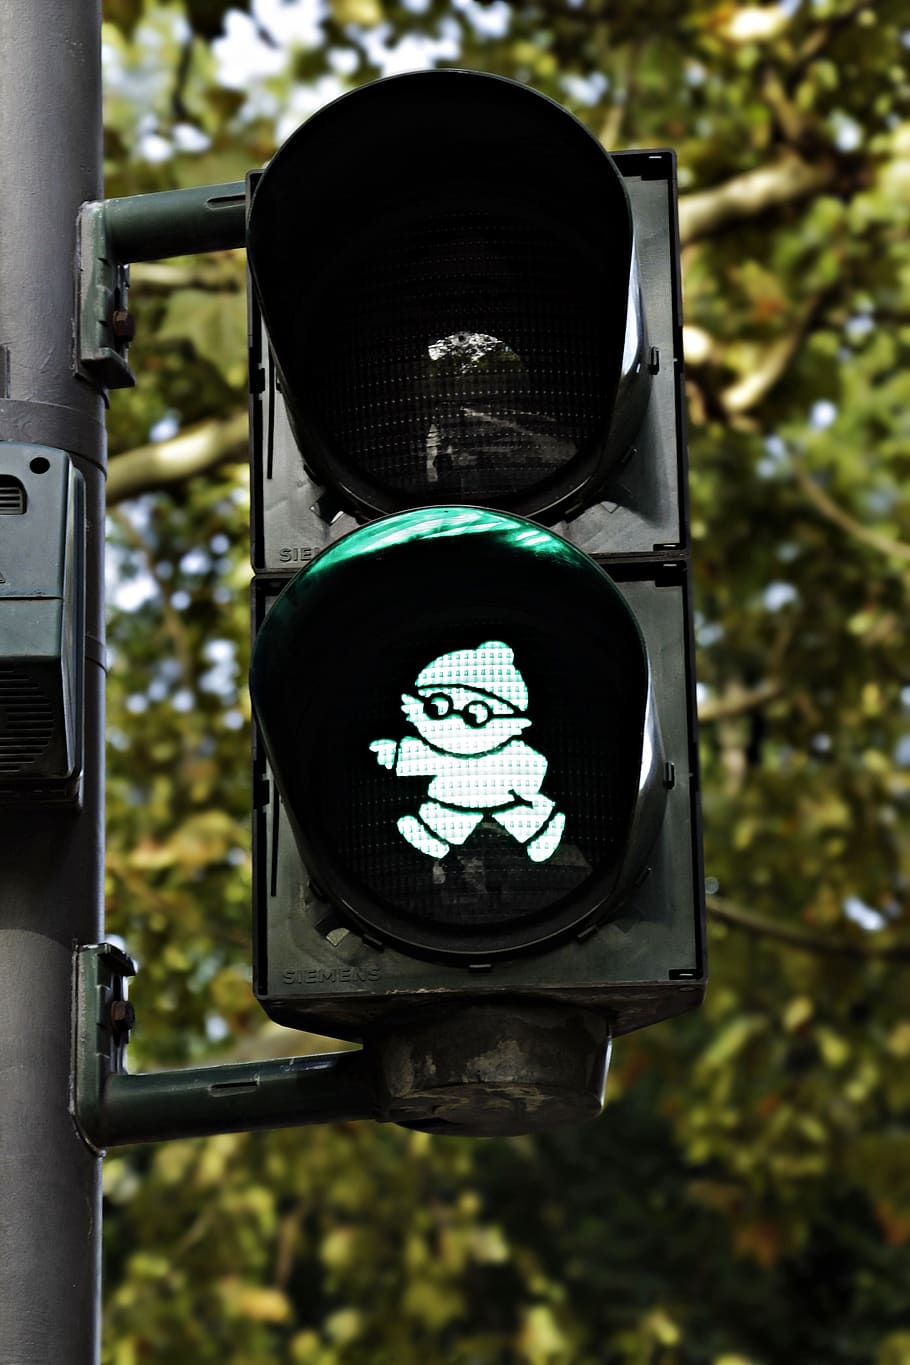 semáforos, mainzelmännchen, verde, señal de tráfico, carretera, señal de luz, ir, peatonal, hombrecito verde, cruz